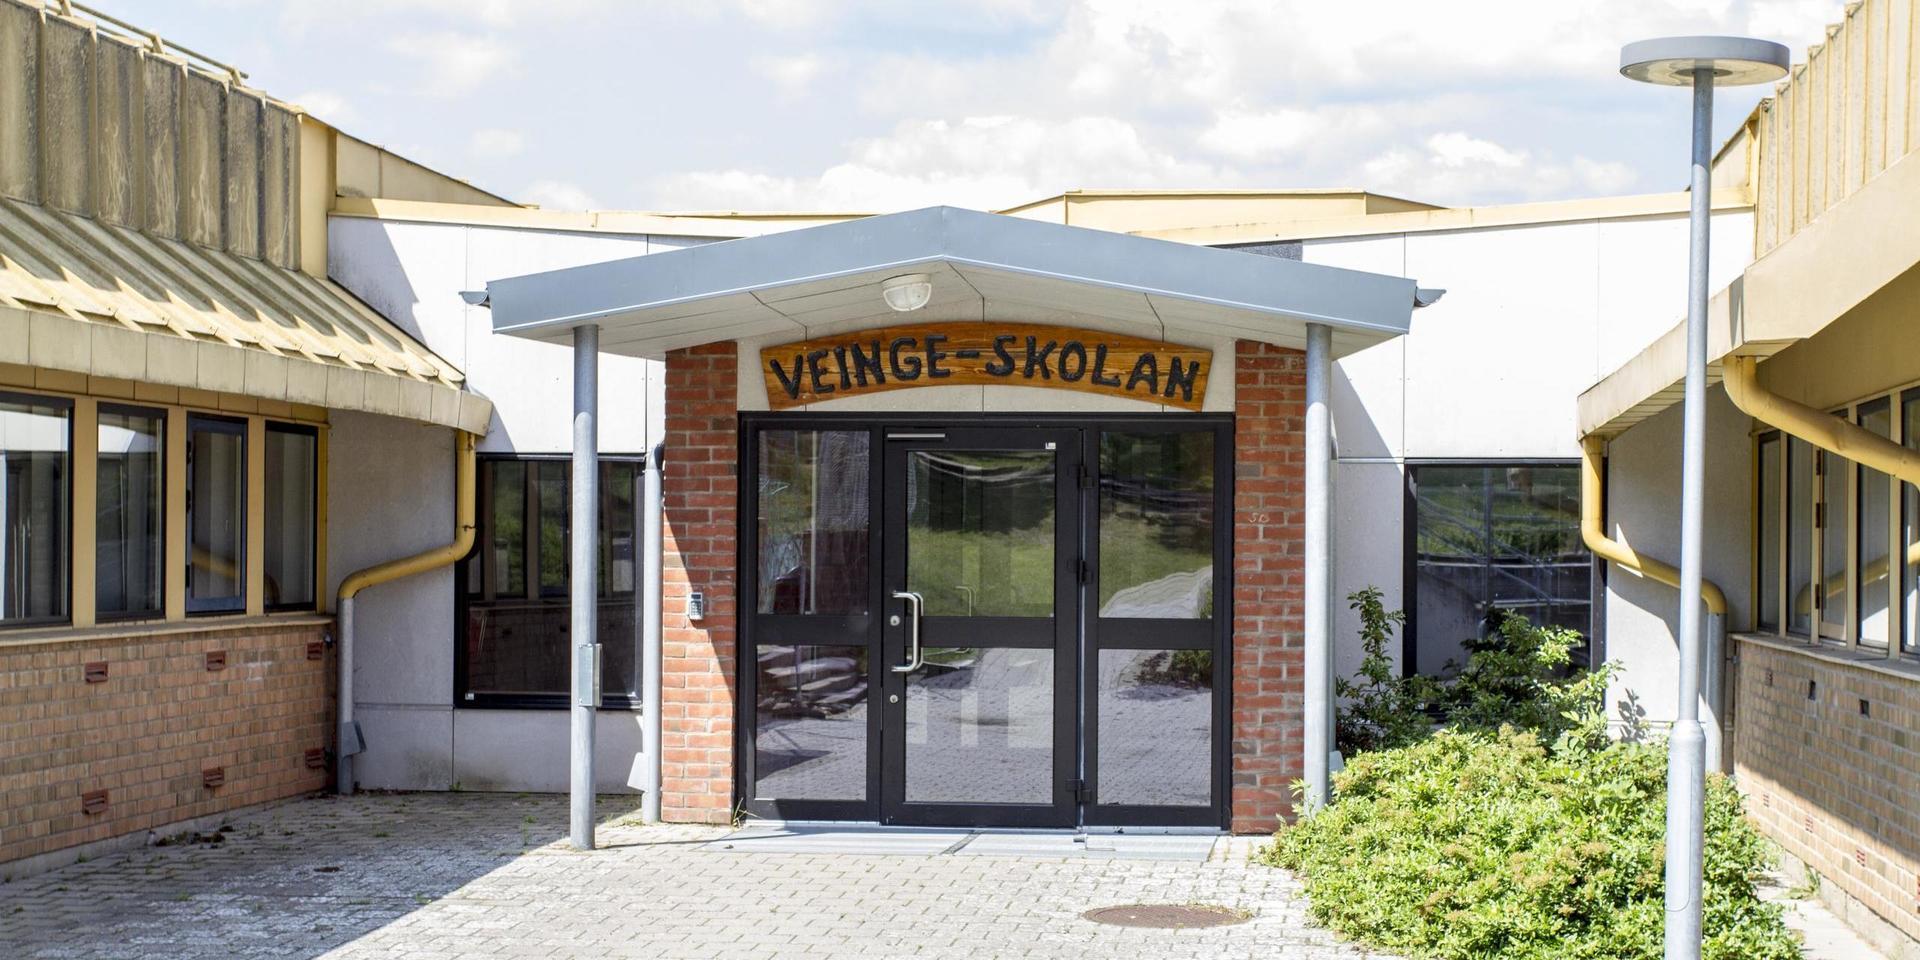 Distansundervisningen har hittills gått ”över förväntan”, menar Veingeskolans rektor Tarja Kemppainen. Nu förlängs hemarbetet för Laholms högstadieelever med en vecka.